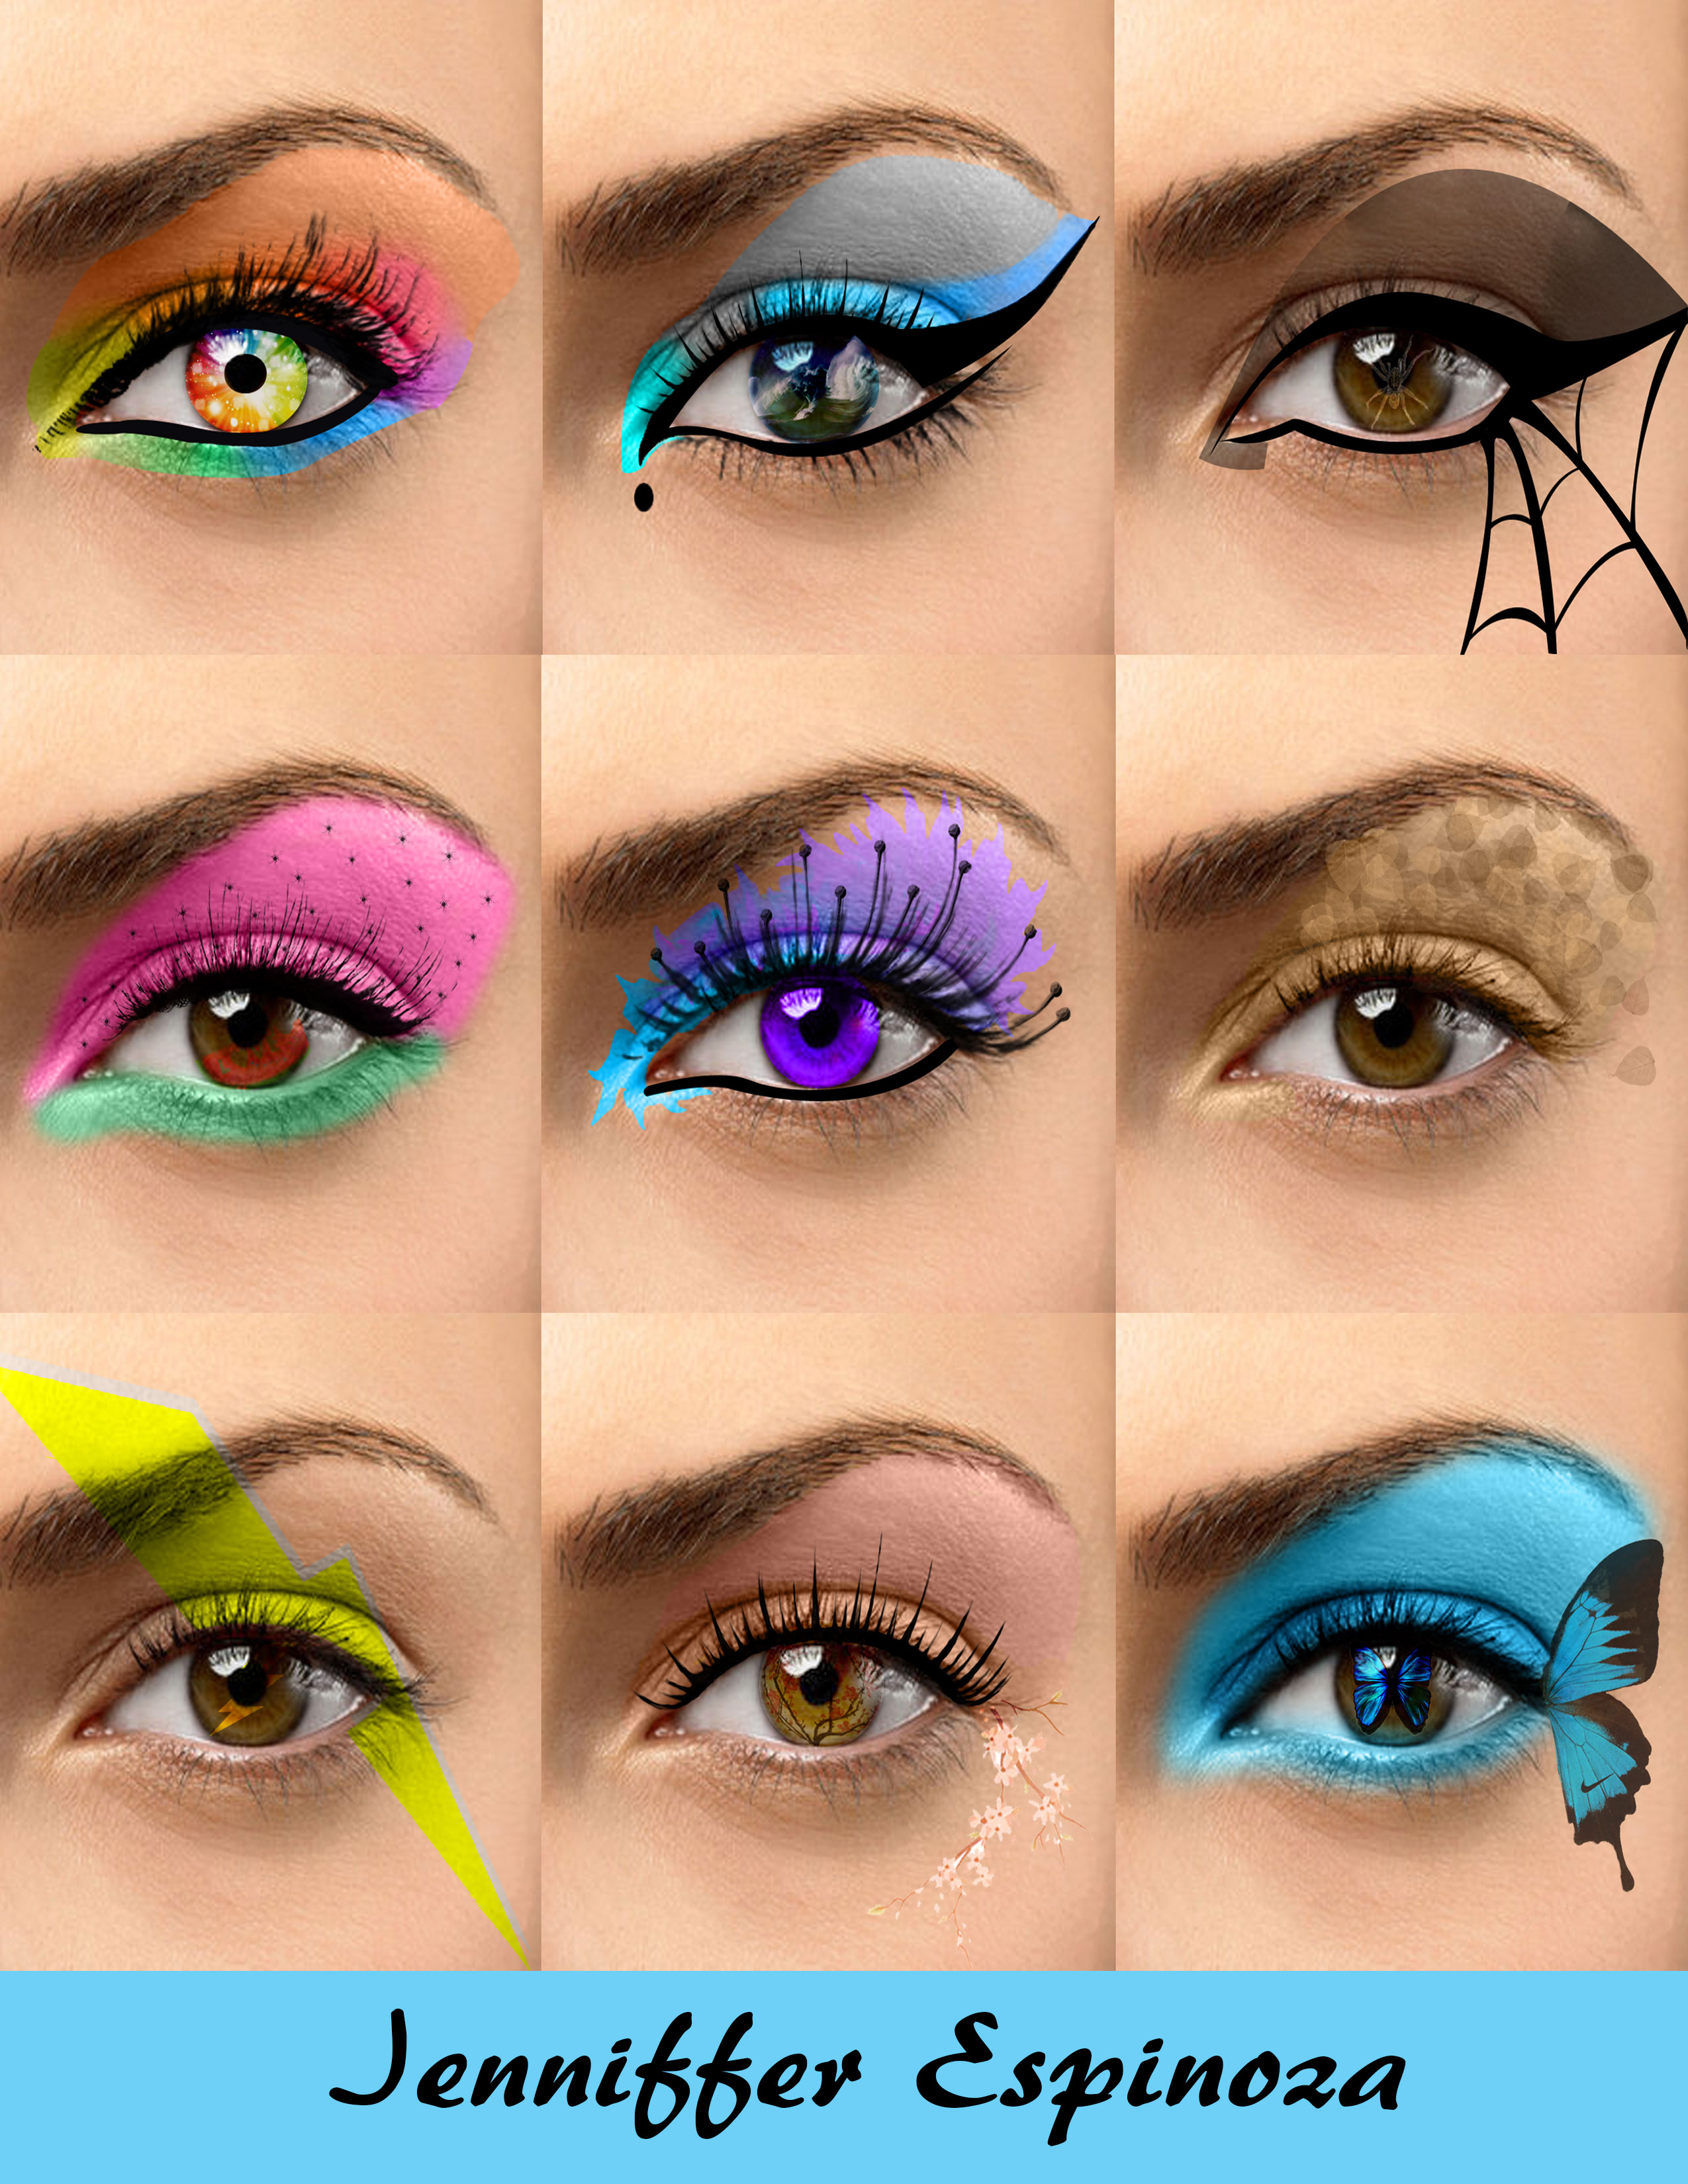 Makeup Designs For Eyes Eye Make Up Beuniquejenn